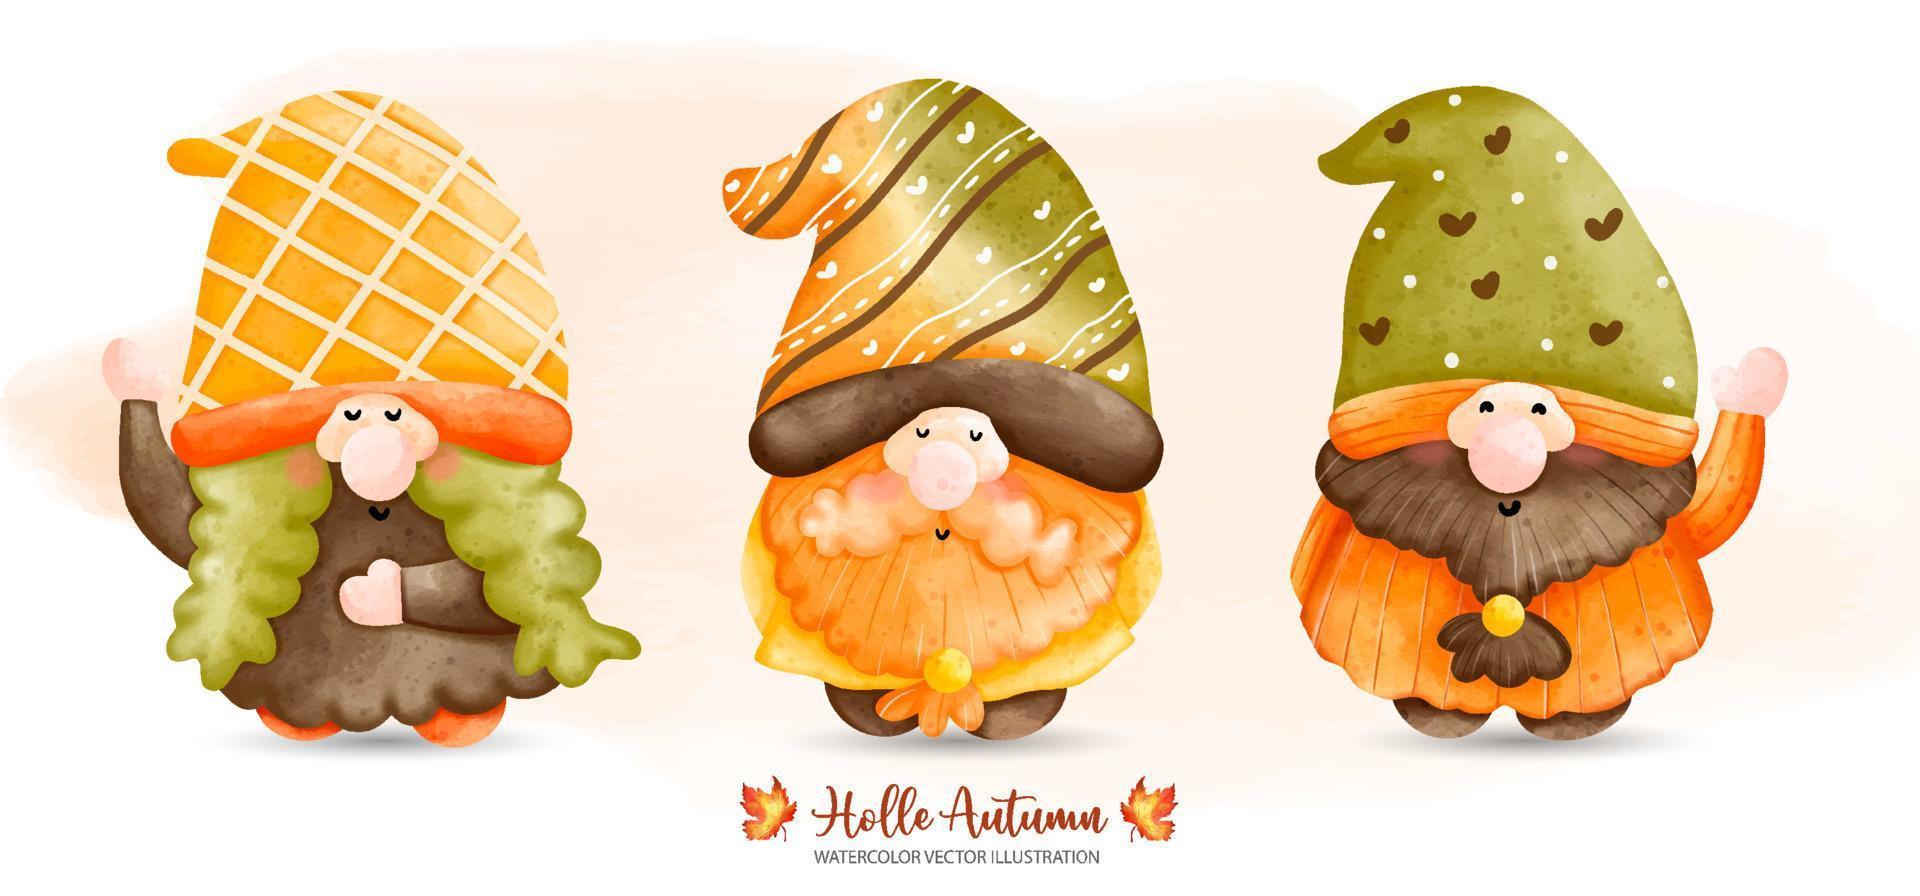 Three Autumn Gnome, Fairy tale Gnome, Autumn or Fall Animal decor, Watercolor illustration vector